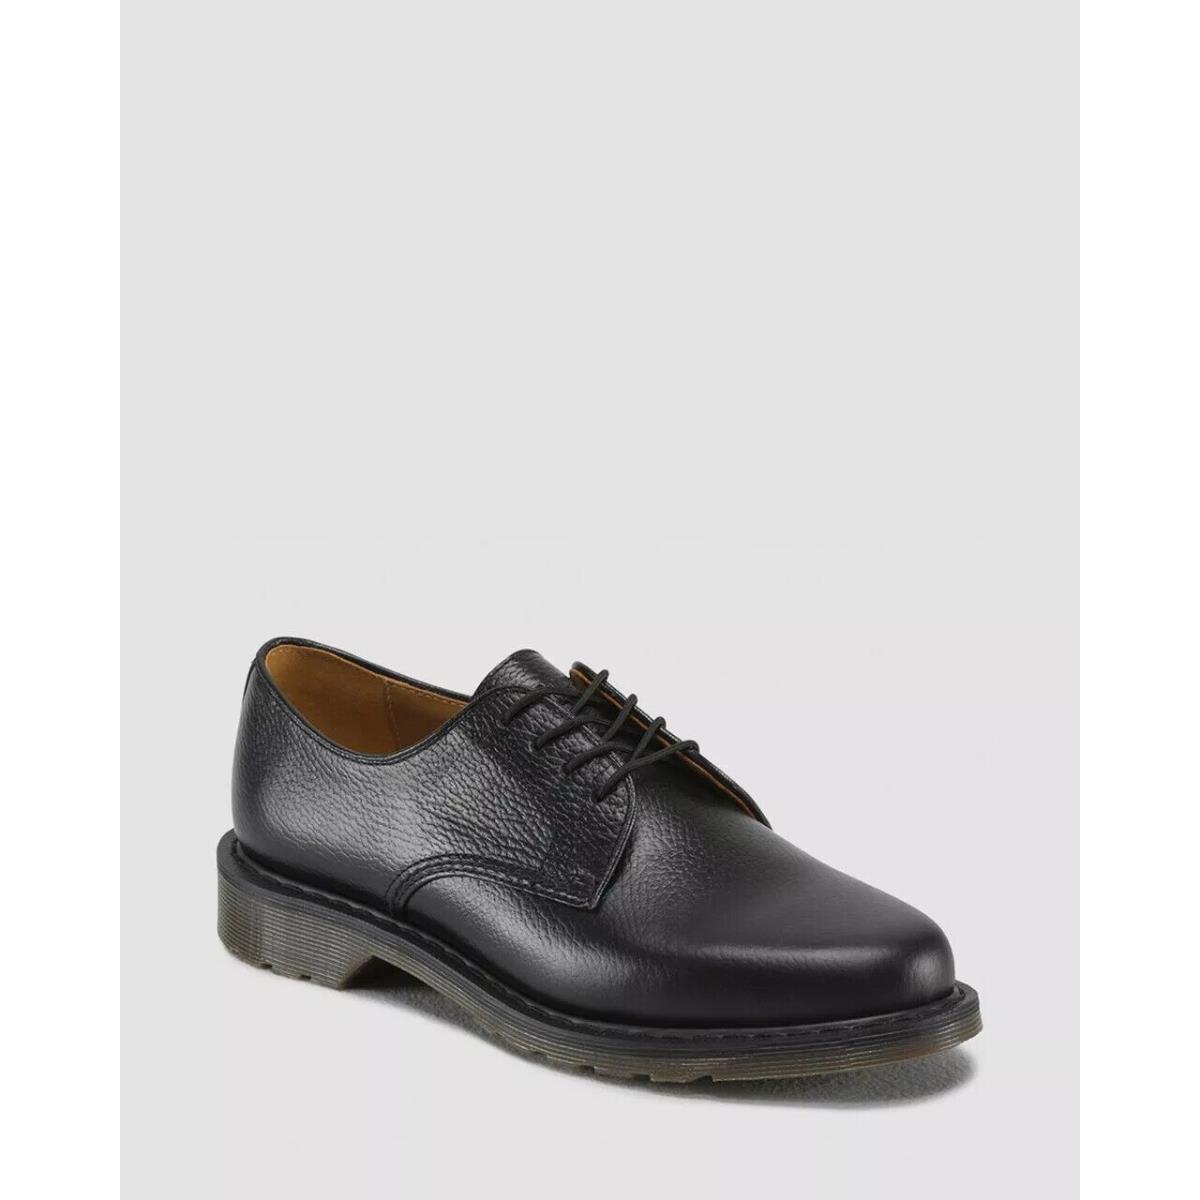 Dr Martens Octavius Black Nova Shoes Men s Size 7-11 16474001